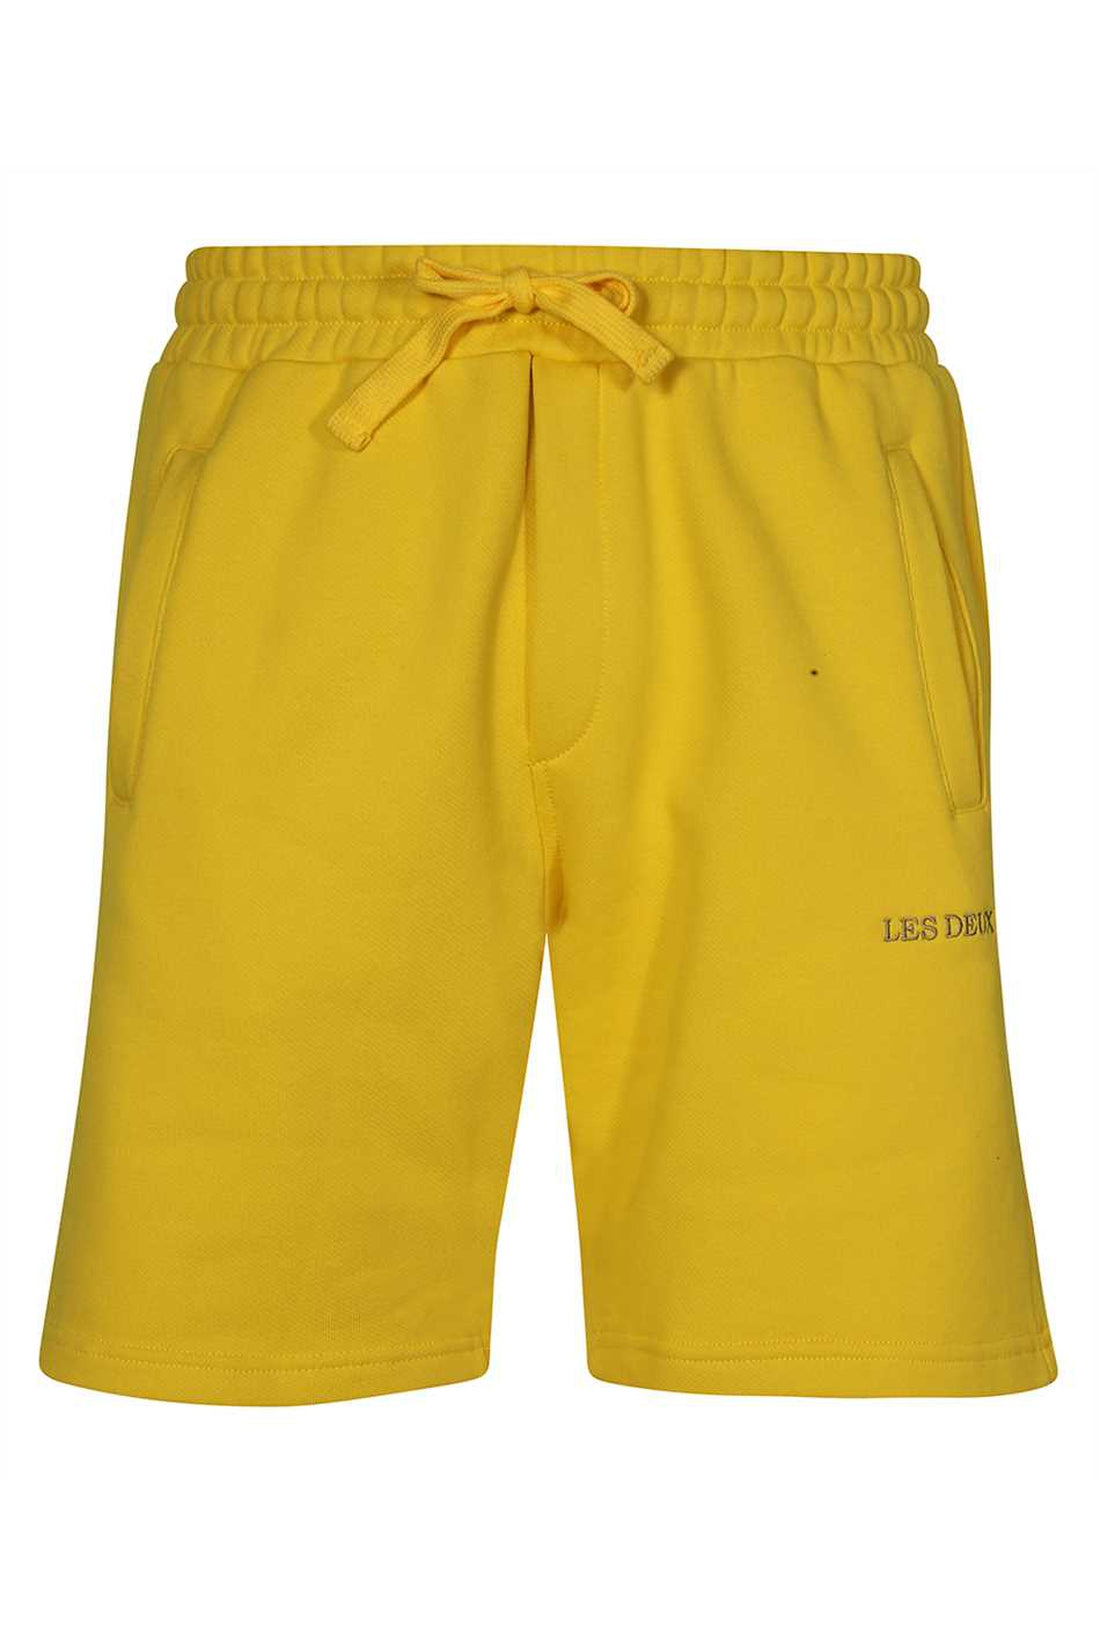 Les Deux-OUTLET-SALE-Fleece shorts-ARCHIVIST